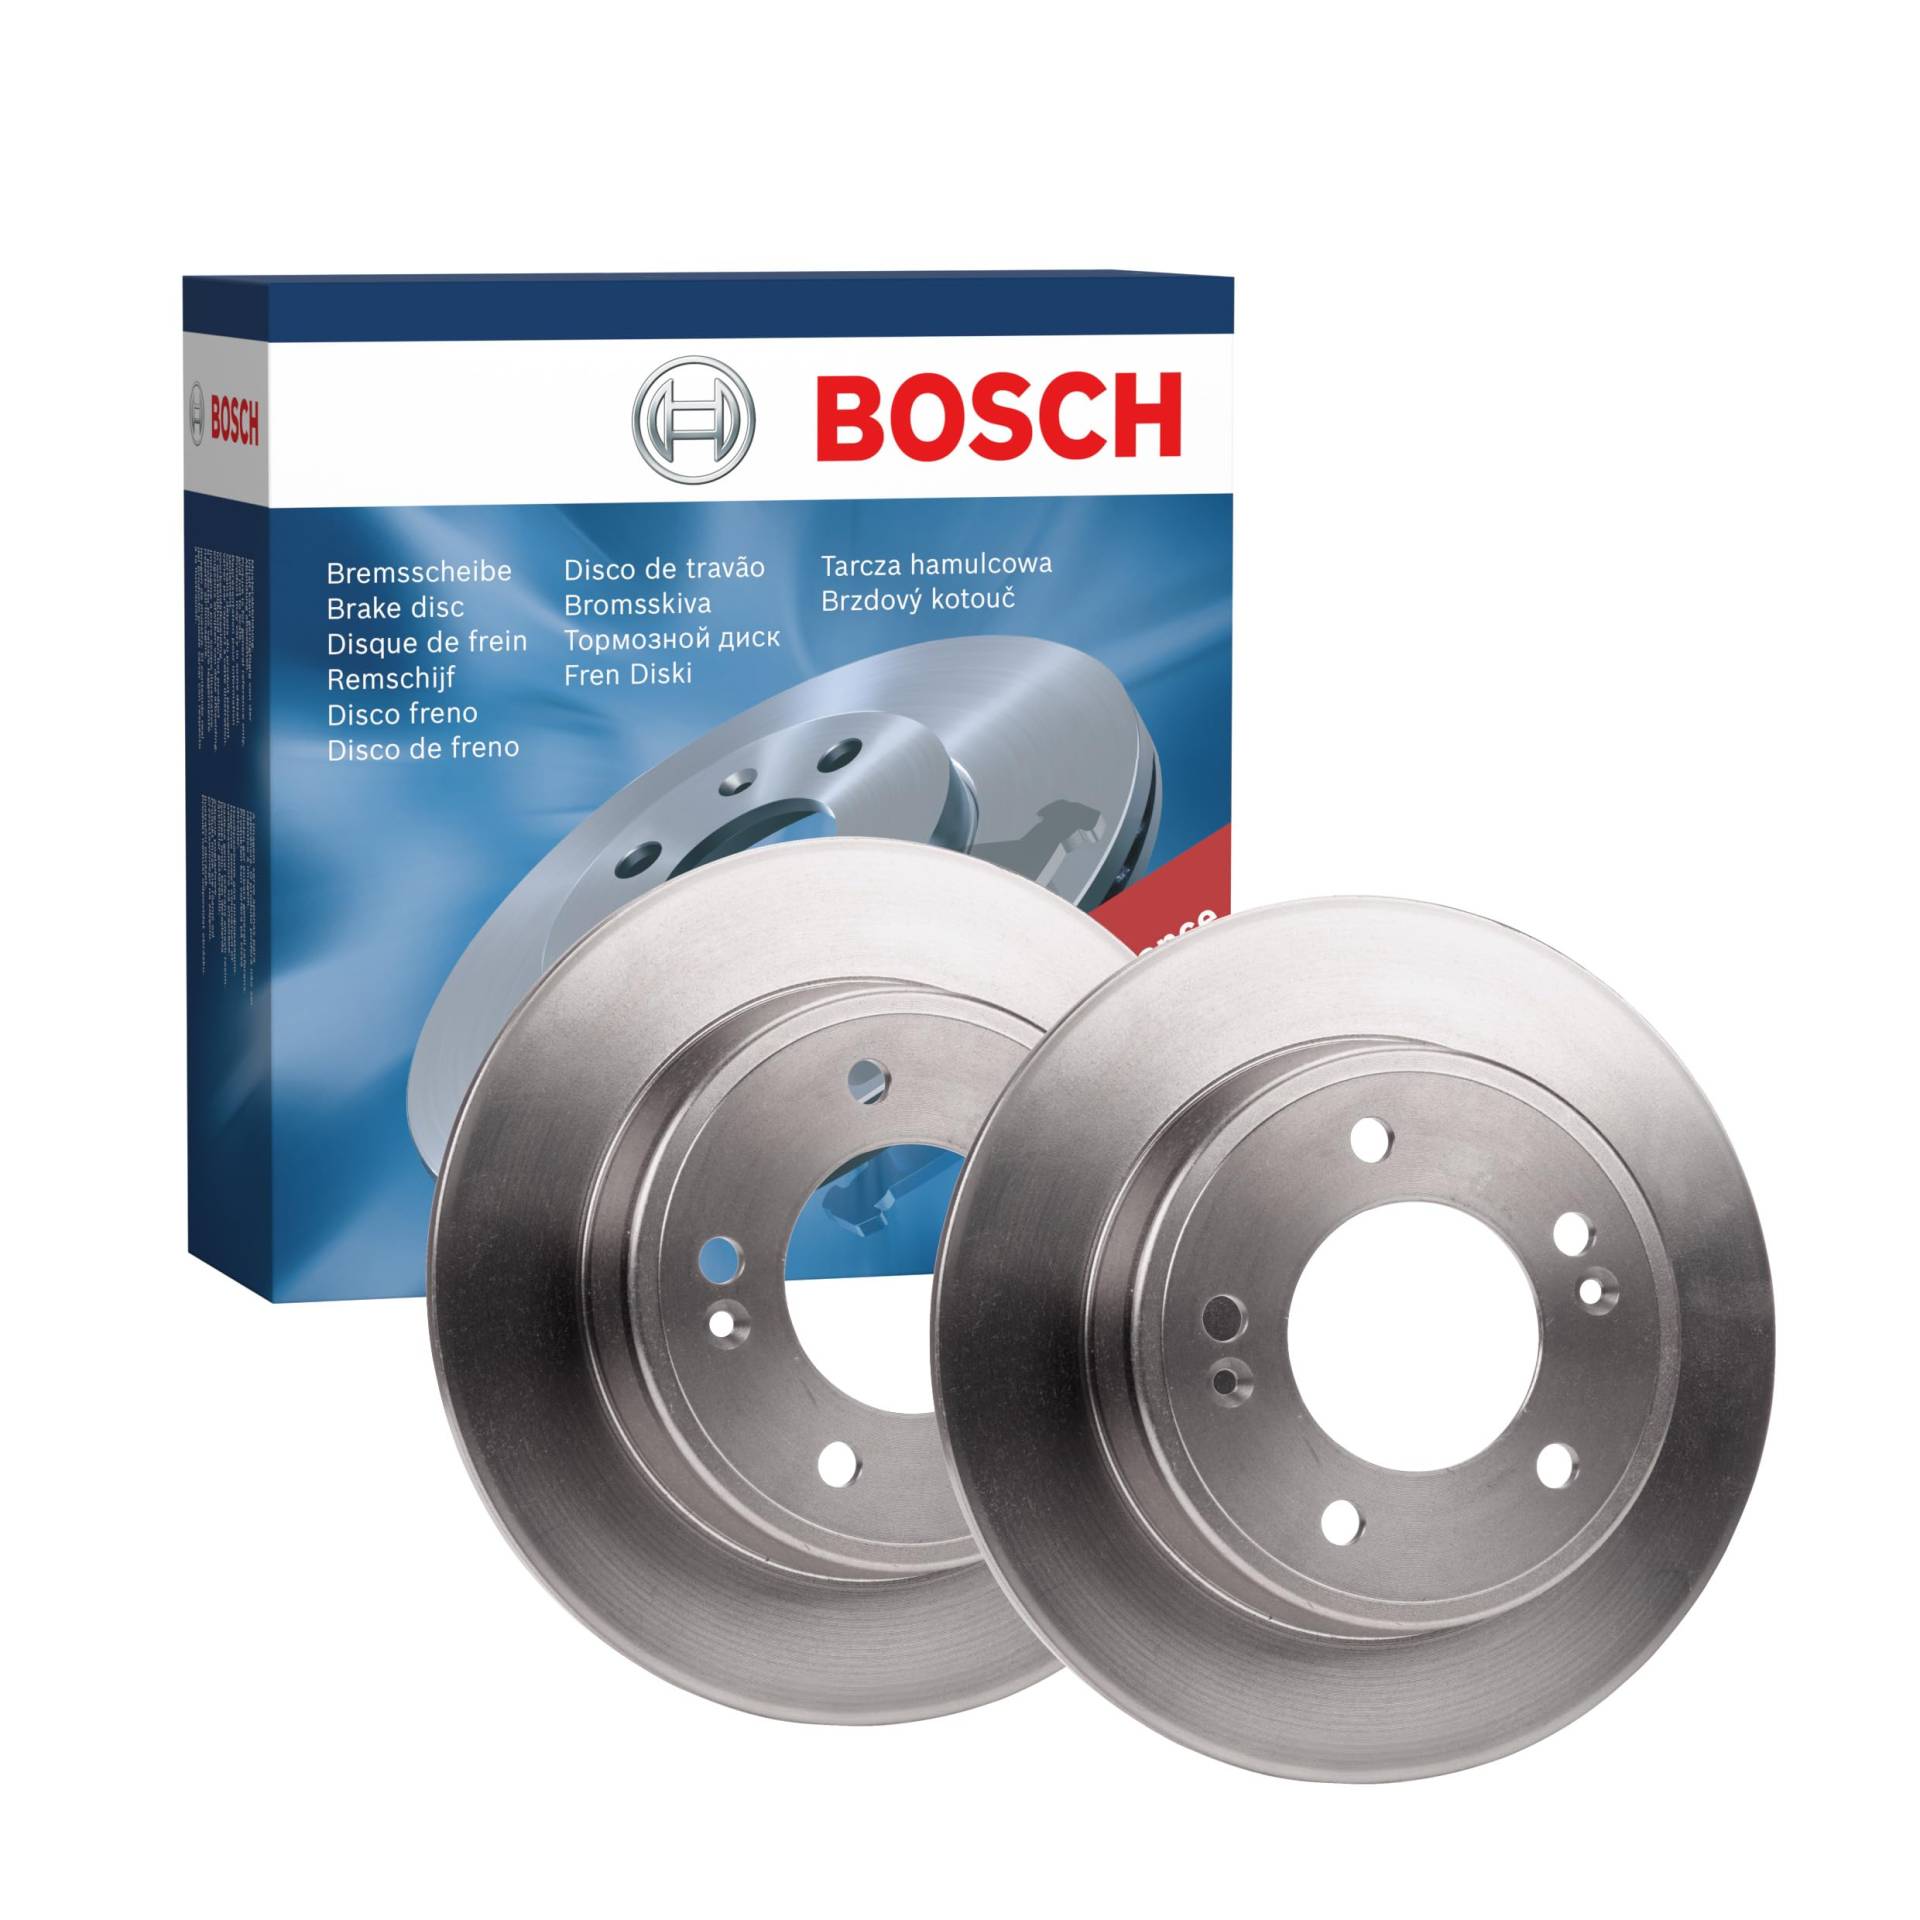 Bosch BD1638 Bremsscheiben - Hinterachse - ECE-R90 Zertifizierung - zwei Bremsscheiben pro Set von Bosch Automotive